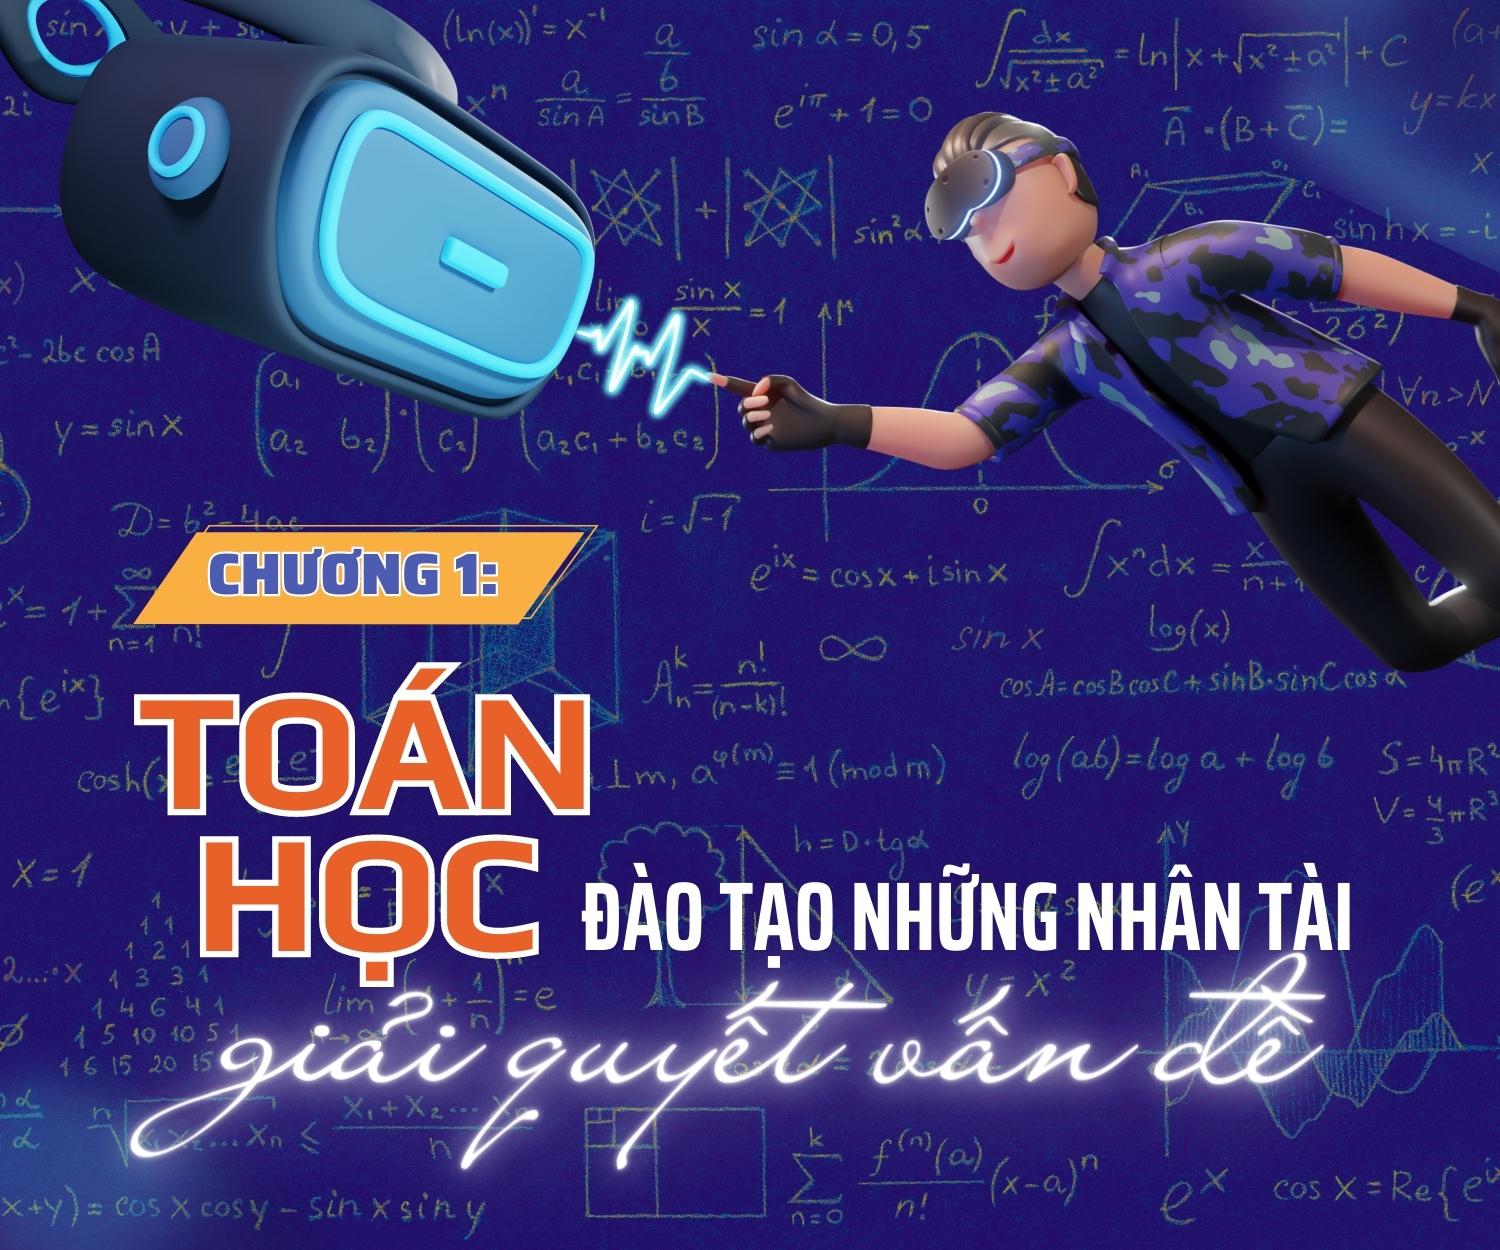 [Megastory] Toán học giúp Việt Nam bắt kịp xu thế thời đại - AI: Chương 1 - Toán học đào tạo những nhân tài giải quyết vấn đề